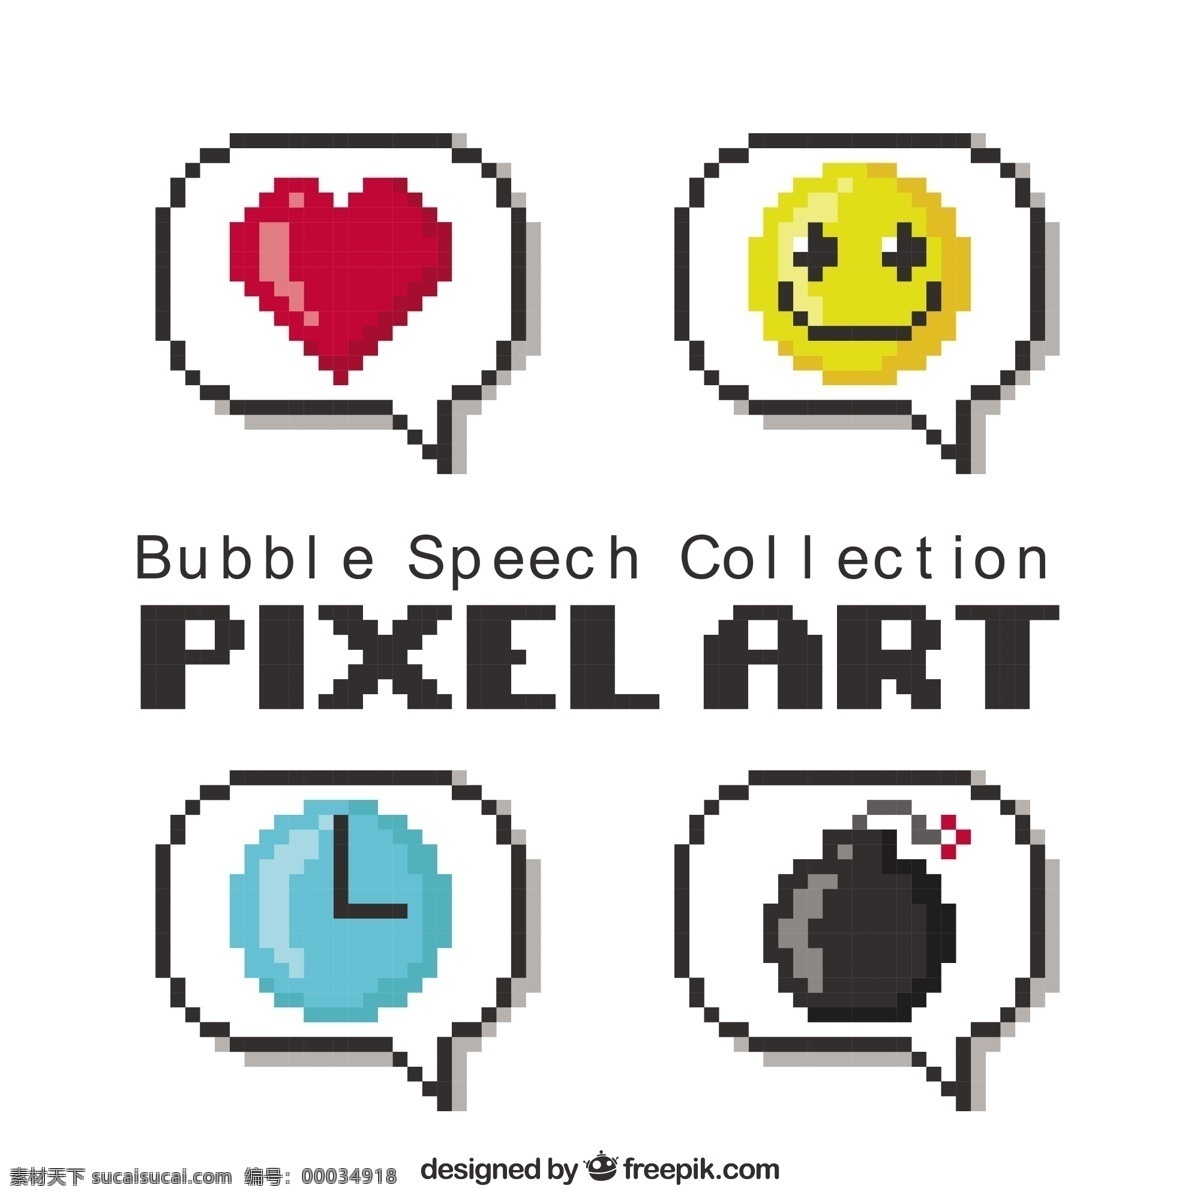 像素 化 语音 气泡 里面有图画 心脏 漫画 时钟 艺术 形状 游戏 通信 气球 笑脸 聊天 谈话 现代 信息 说话